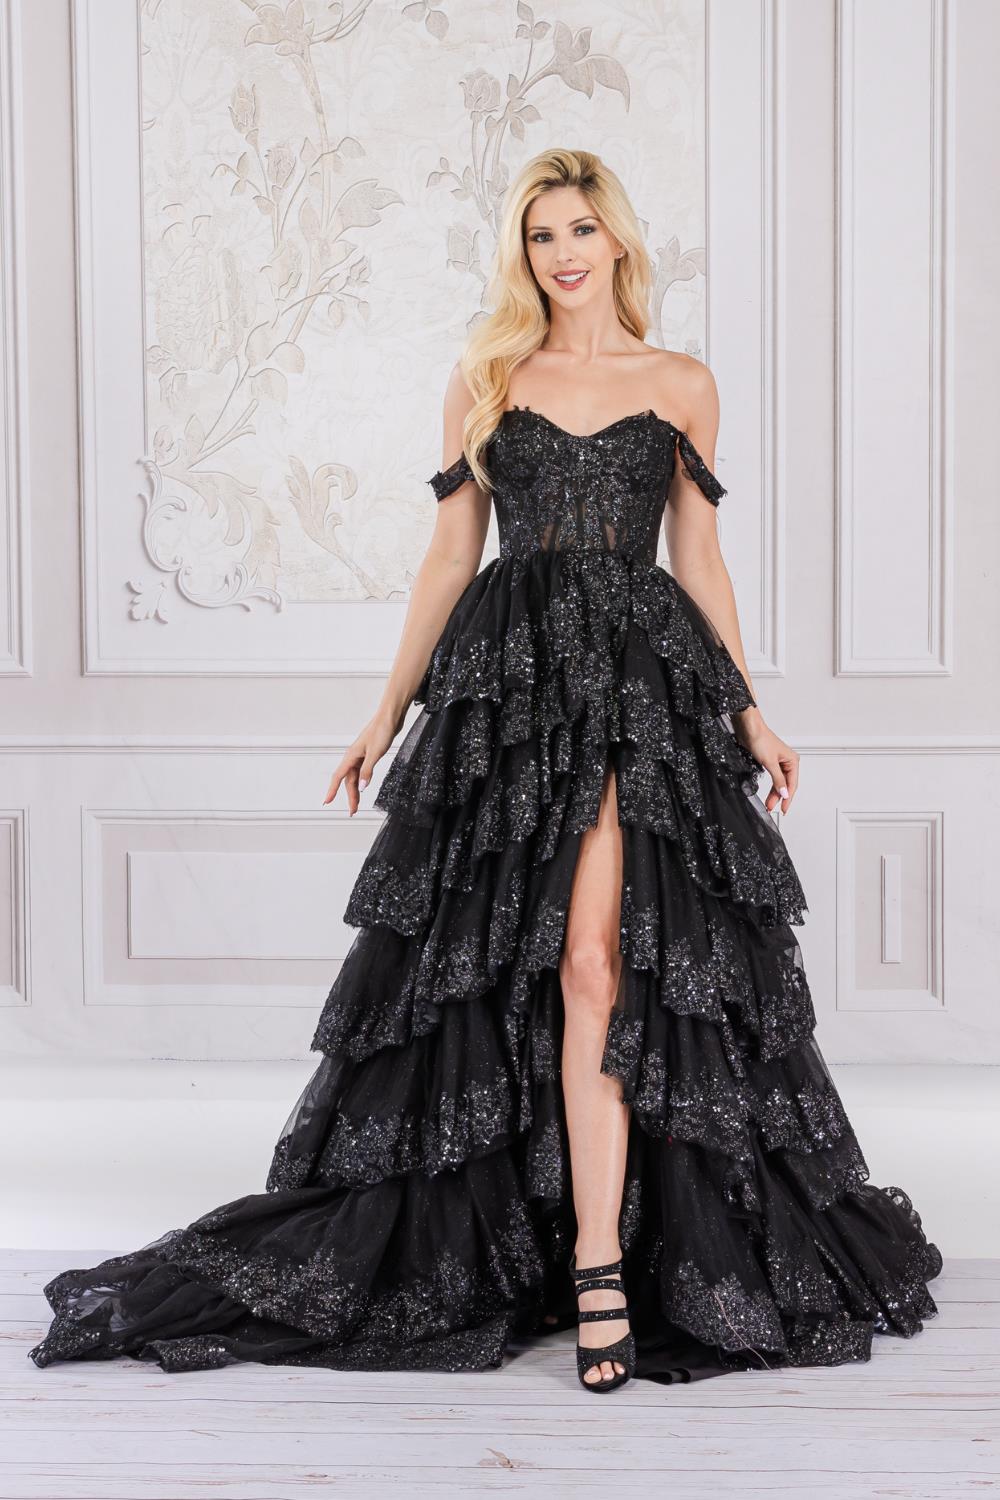 Off Shoulder Corset Dress, Black Prom Gown, Elegant Evevning Dress